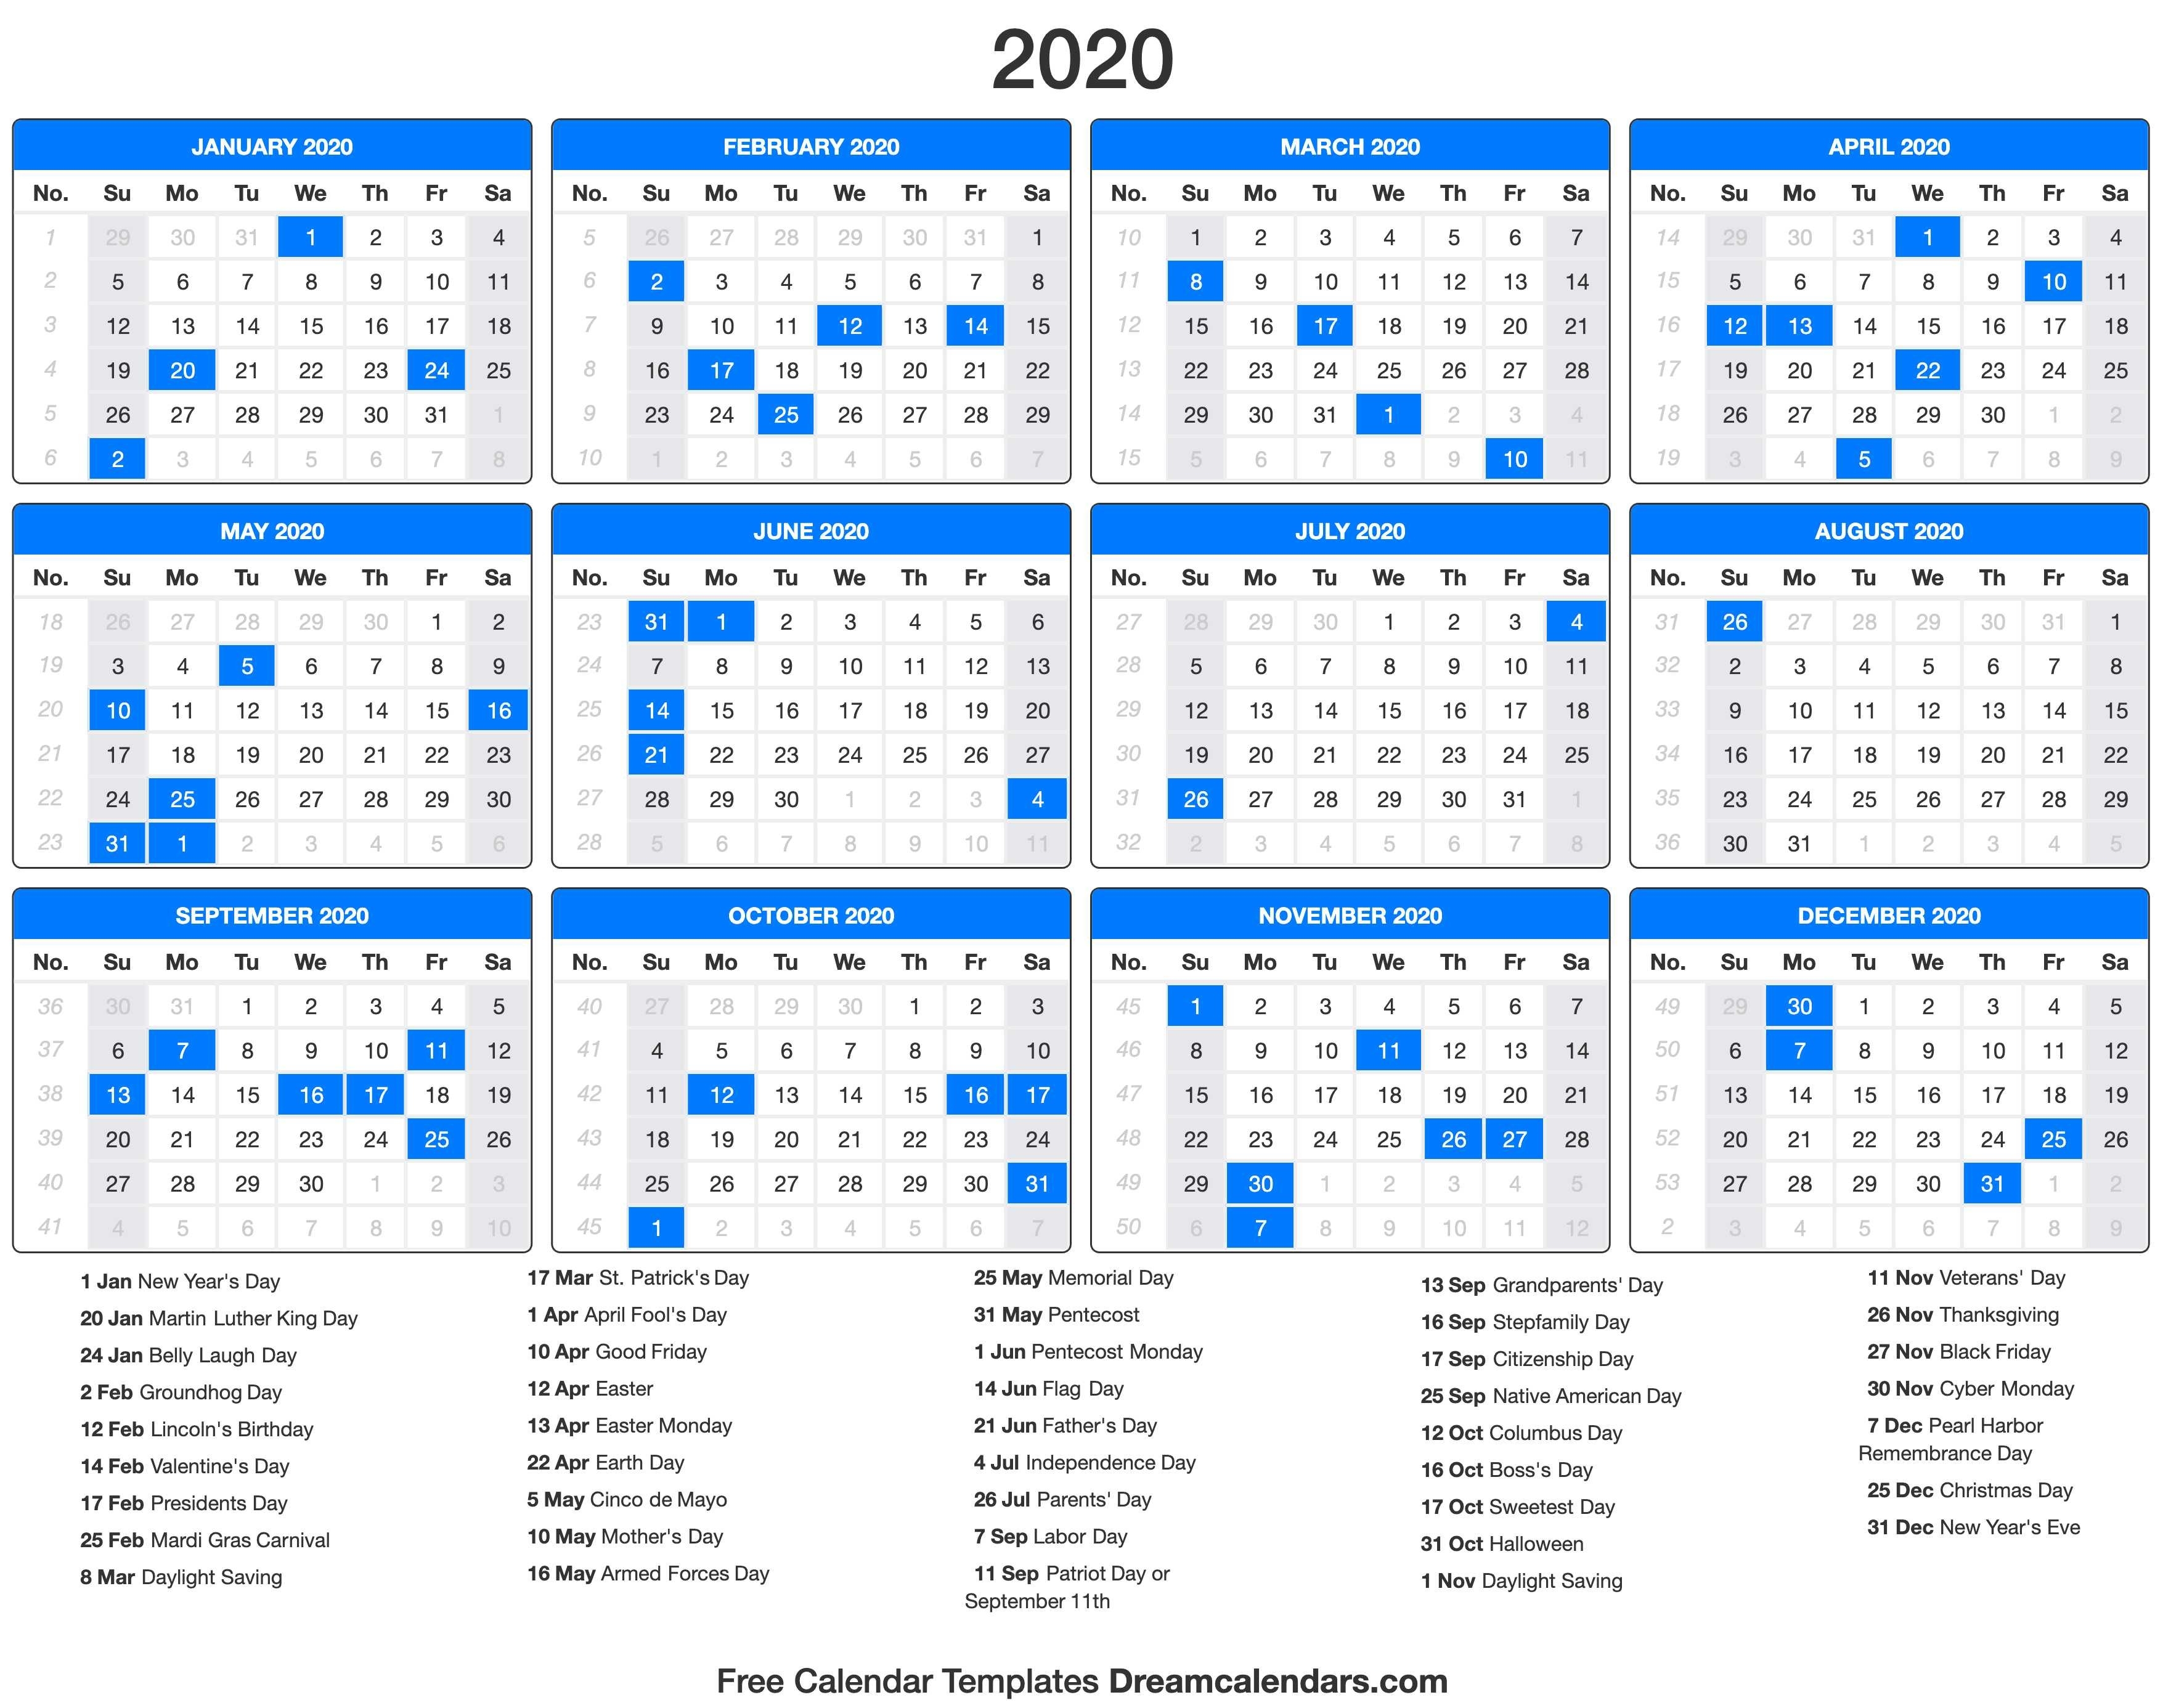 Dream Calendars - Make Your Calendar Template Blog-2020 Calendar With Food Holidays